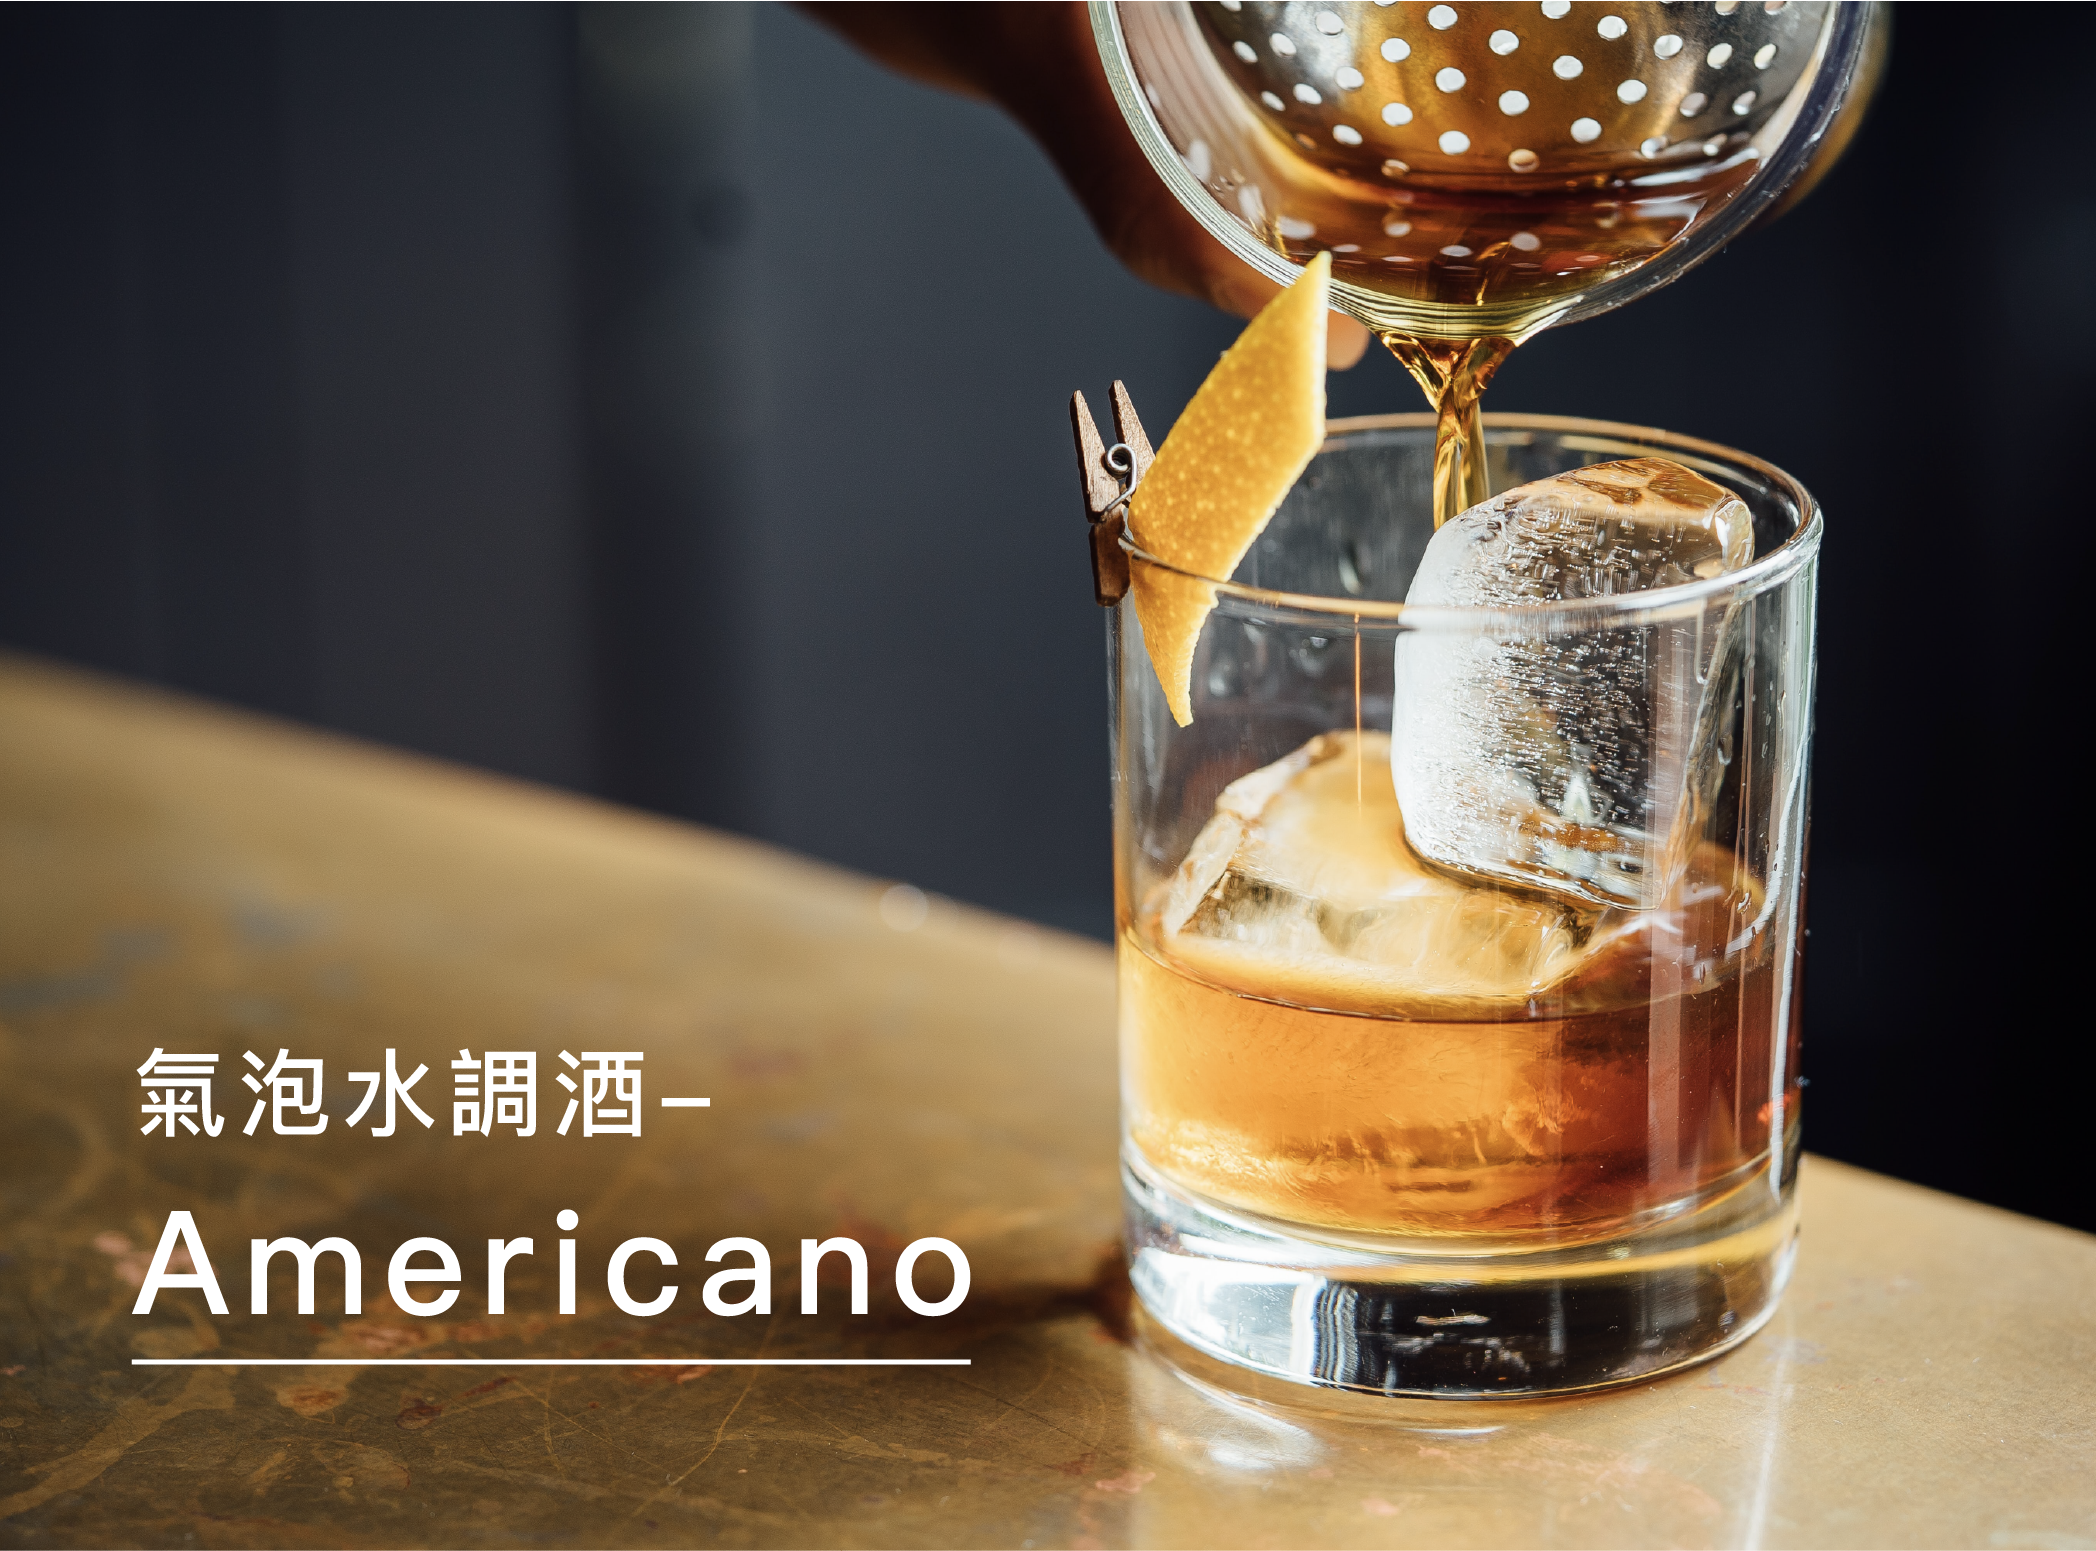 源自義大利的「Americano」調酒由60多種藥草、香料製成